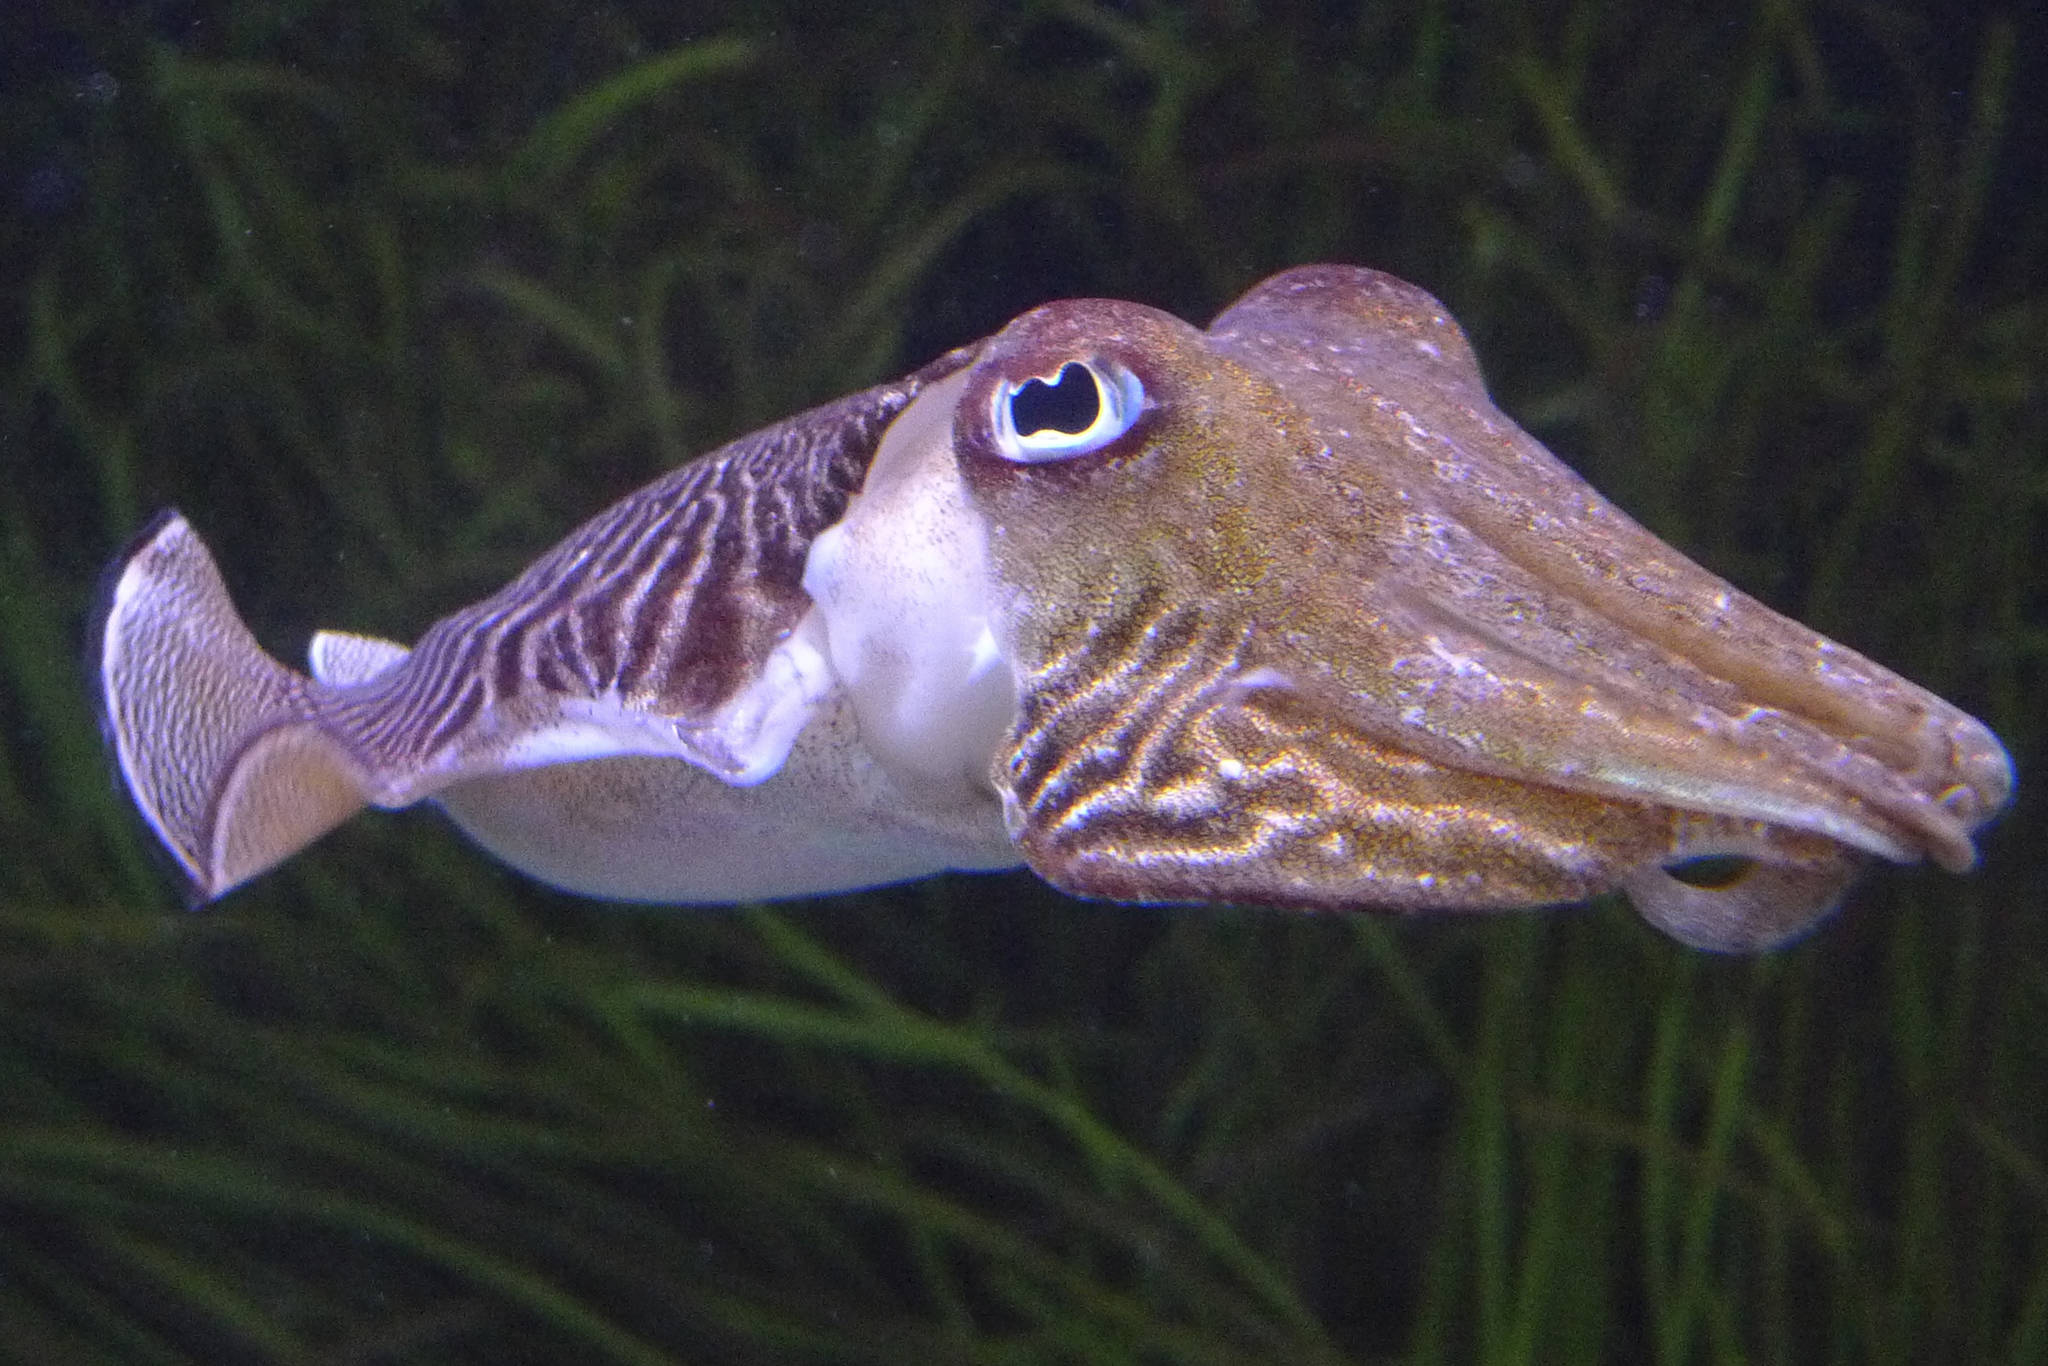 A cuddly cuttlefish. Courtesy Wikimedia